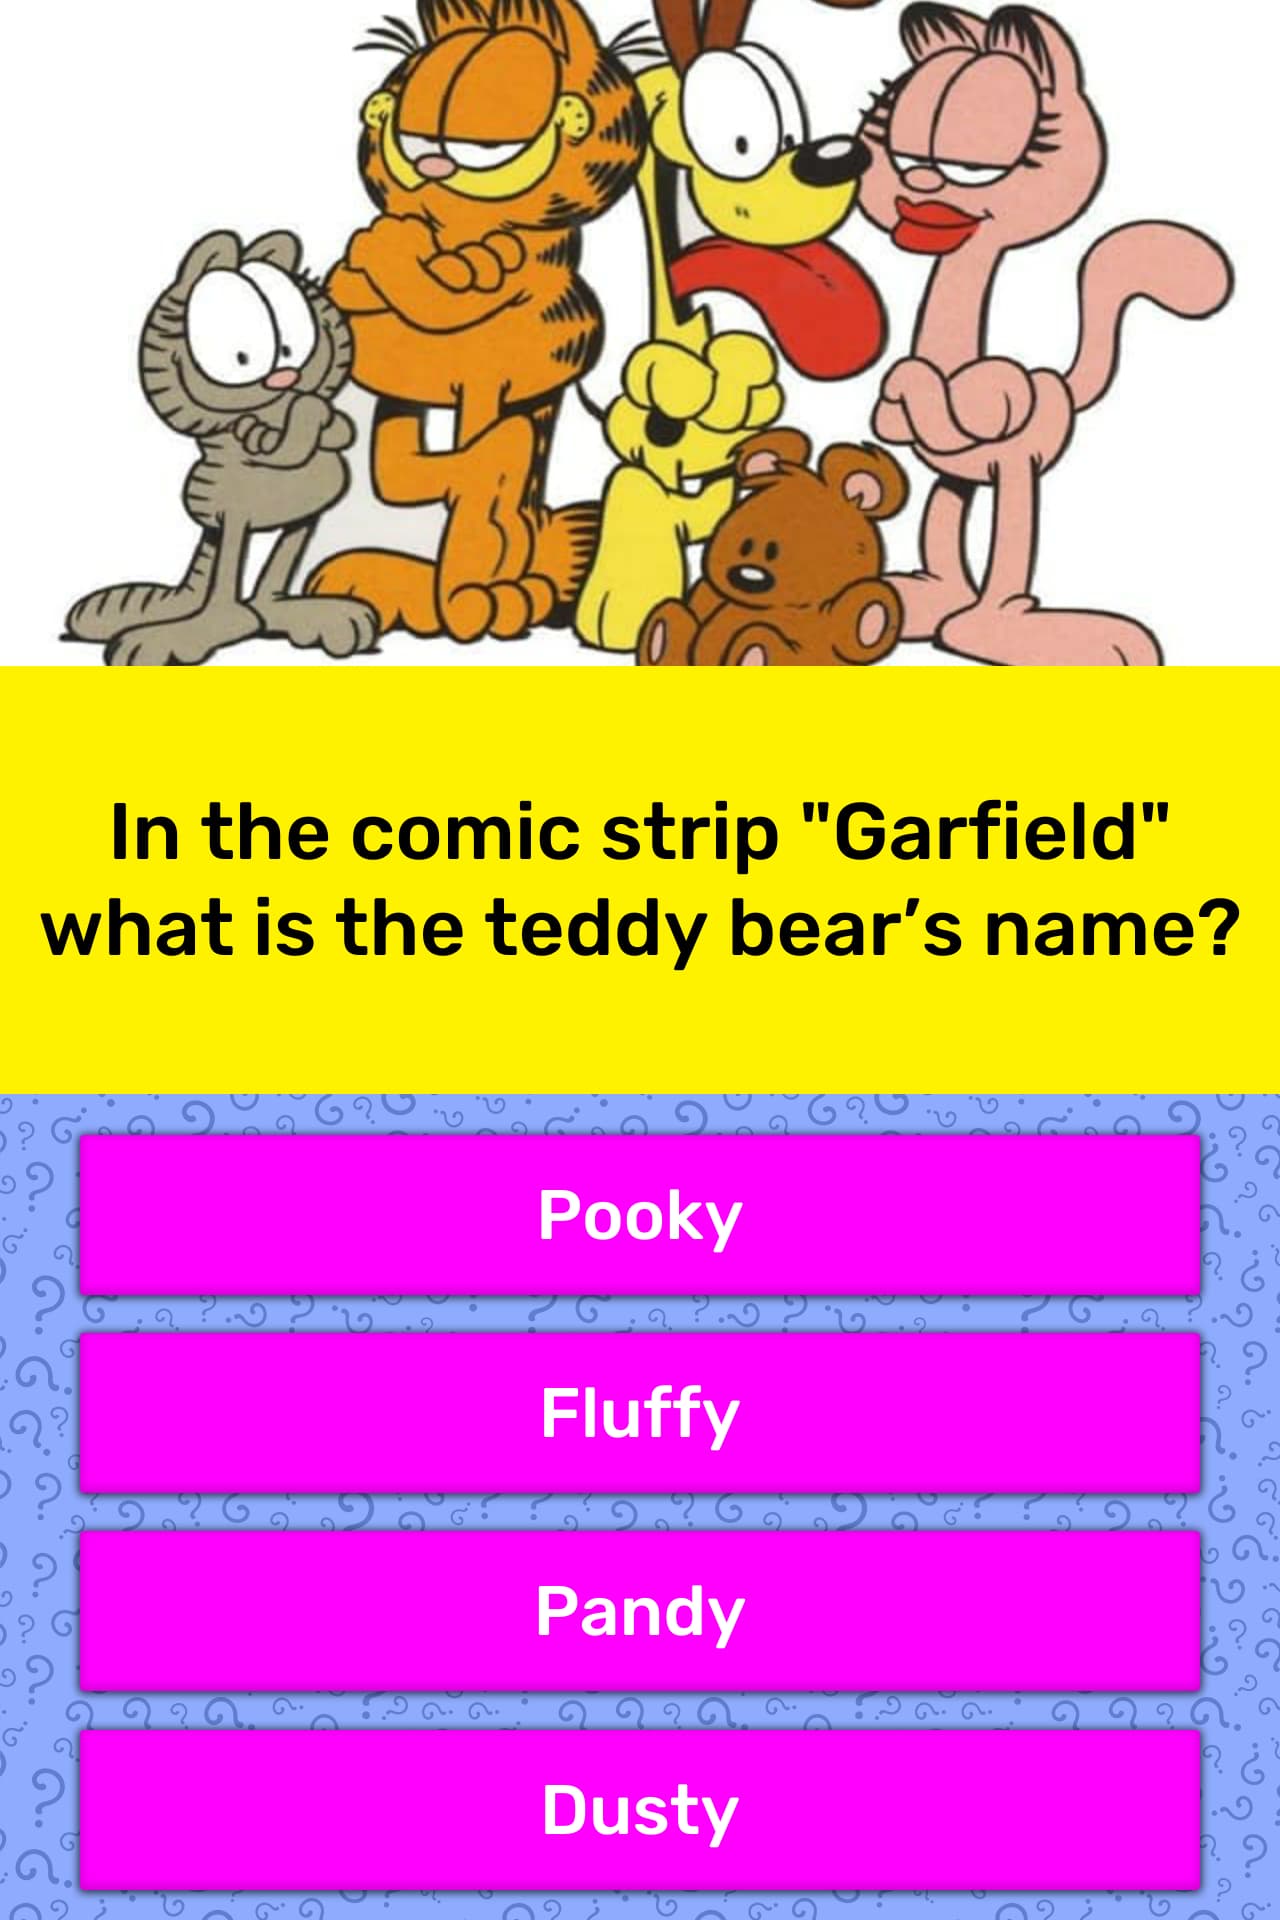 pooky garfield's teddy bear